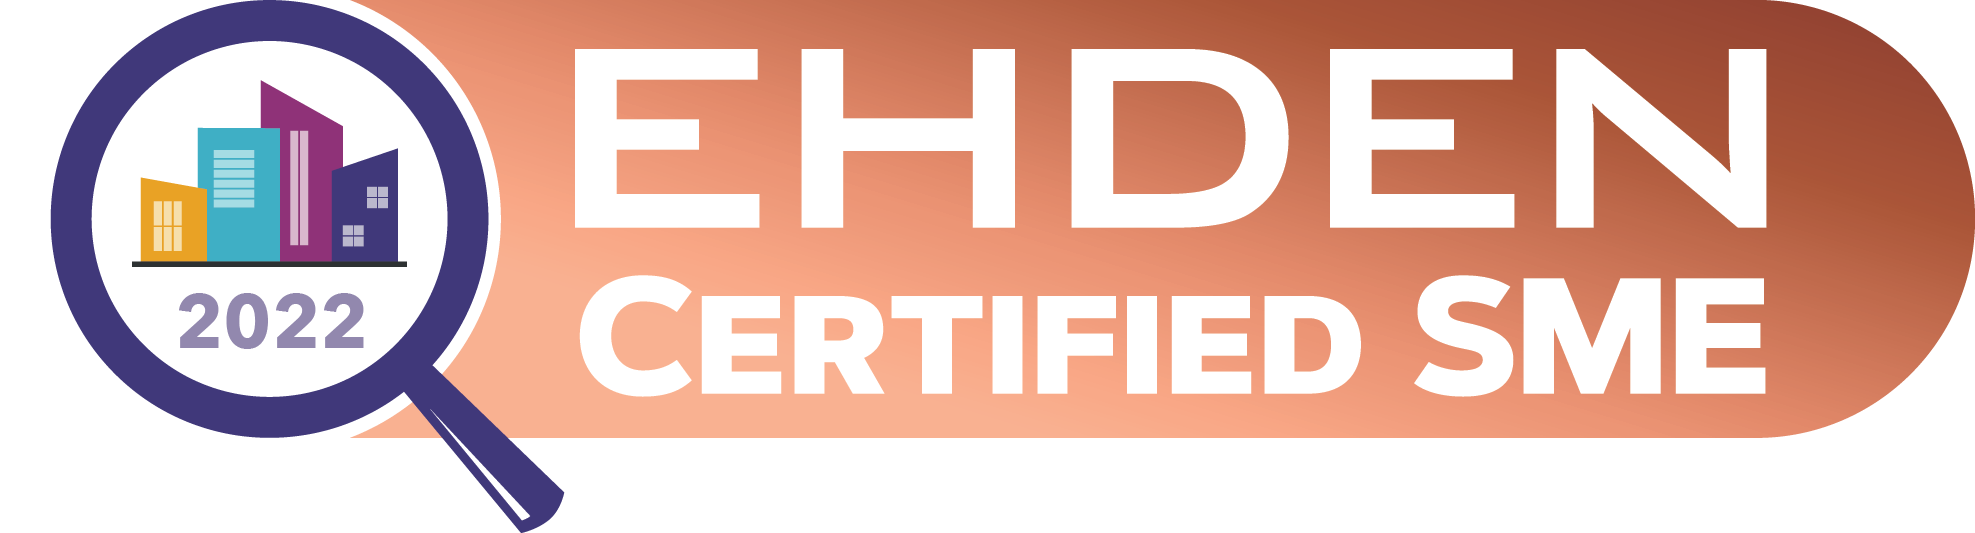 EHDEN Certified SME Bronze Badge